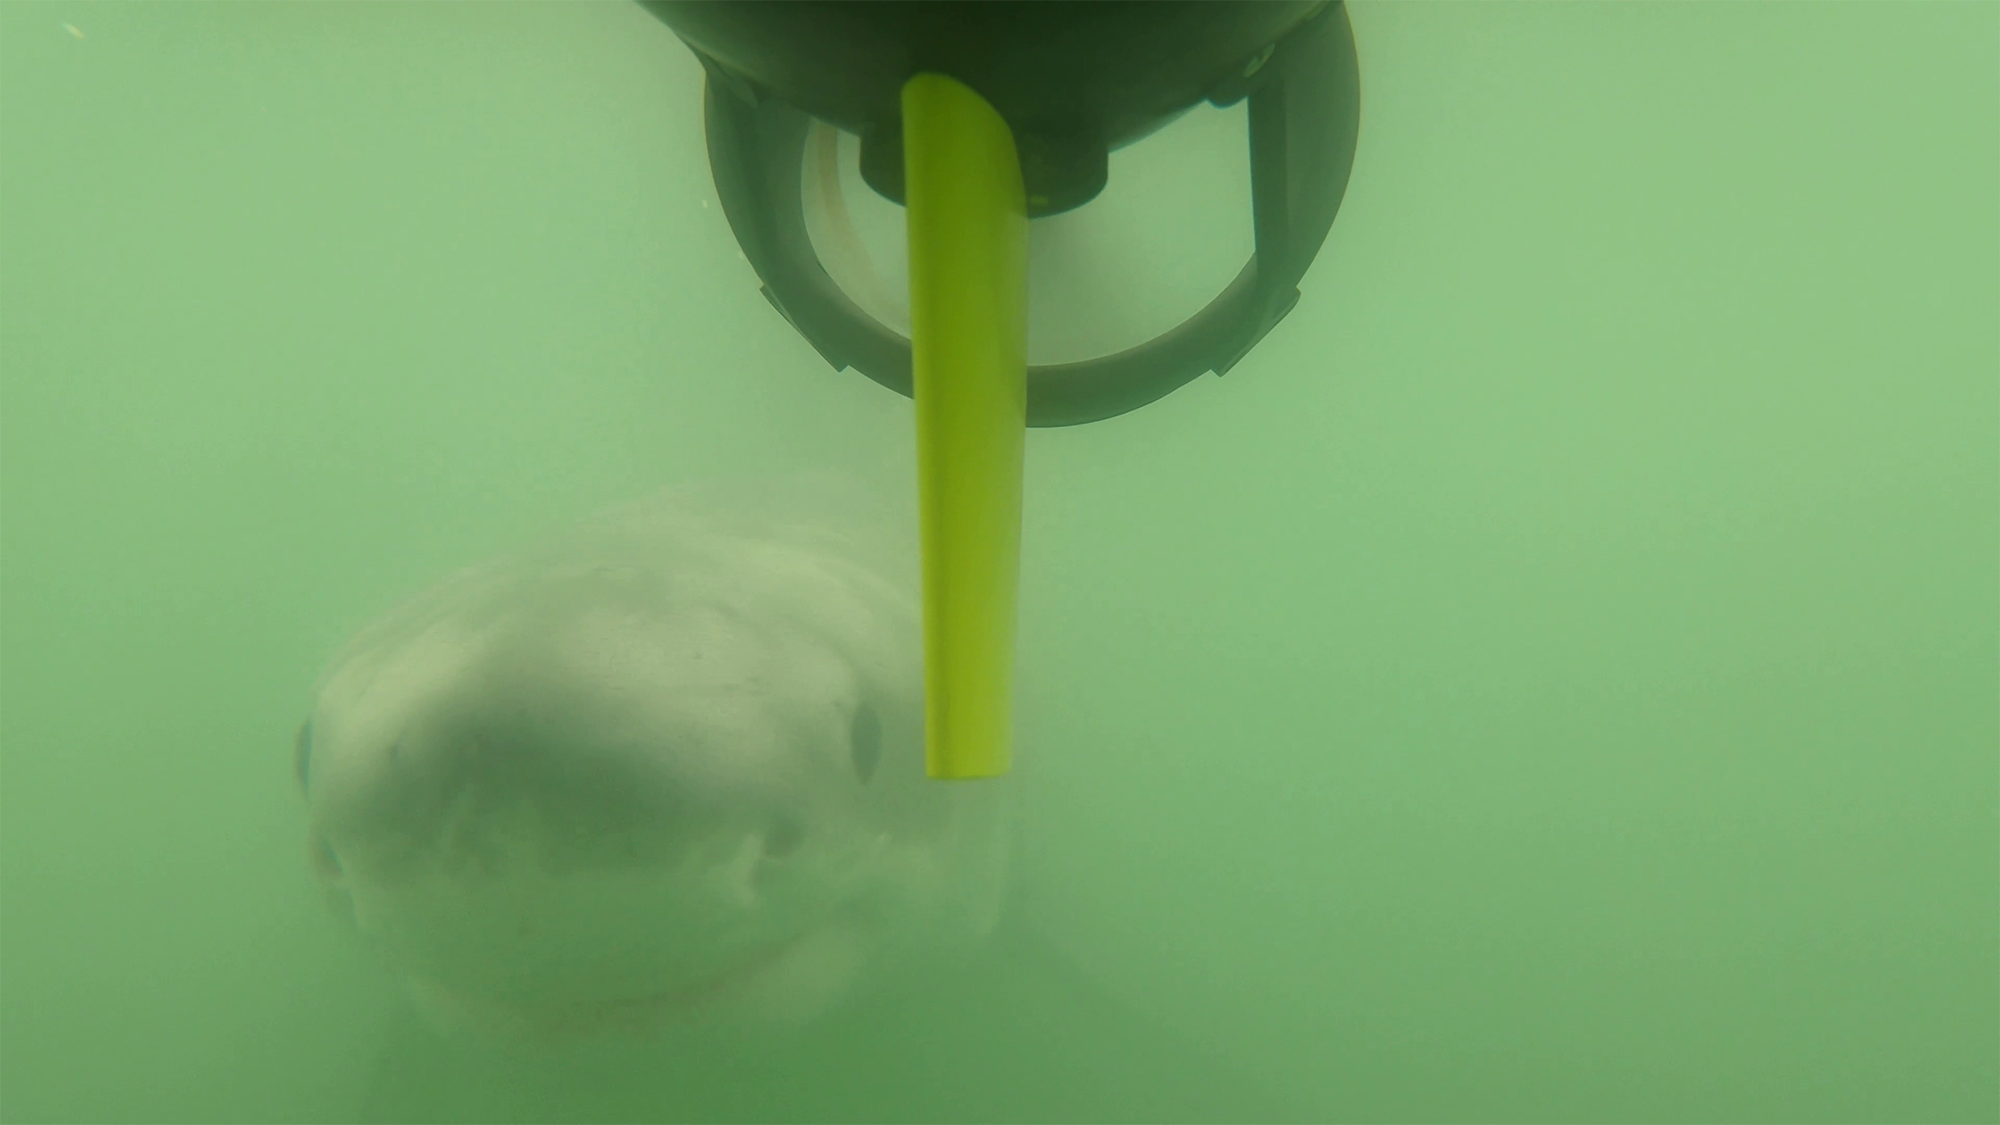 a juvenile shark following an autonomous underwater robot